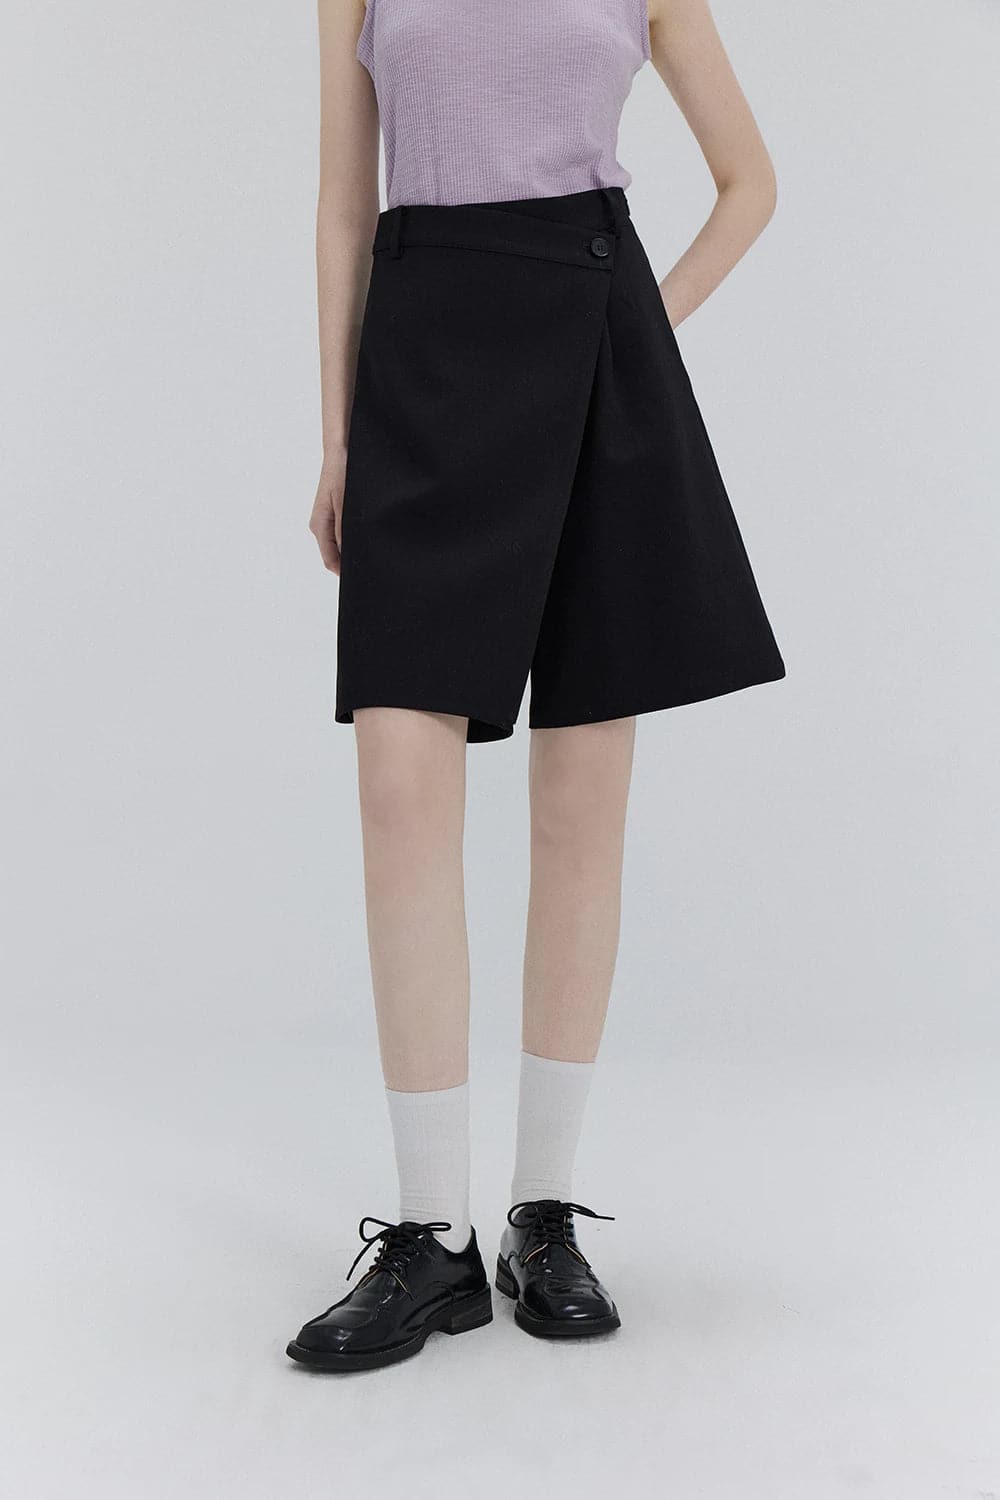 Schicke Crossover-Culotte-Shorts mit Knöpfen – vielseitige Mode für das urbane Leben